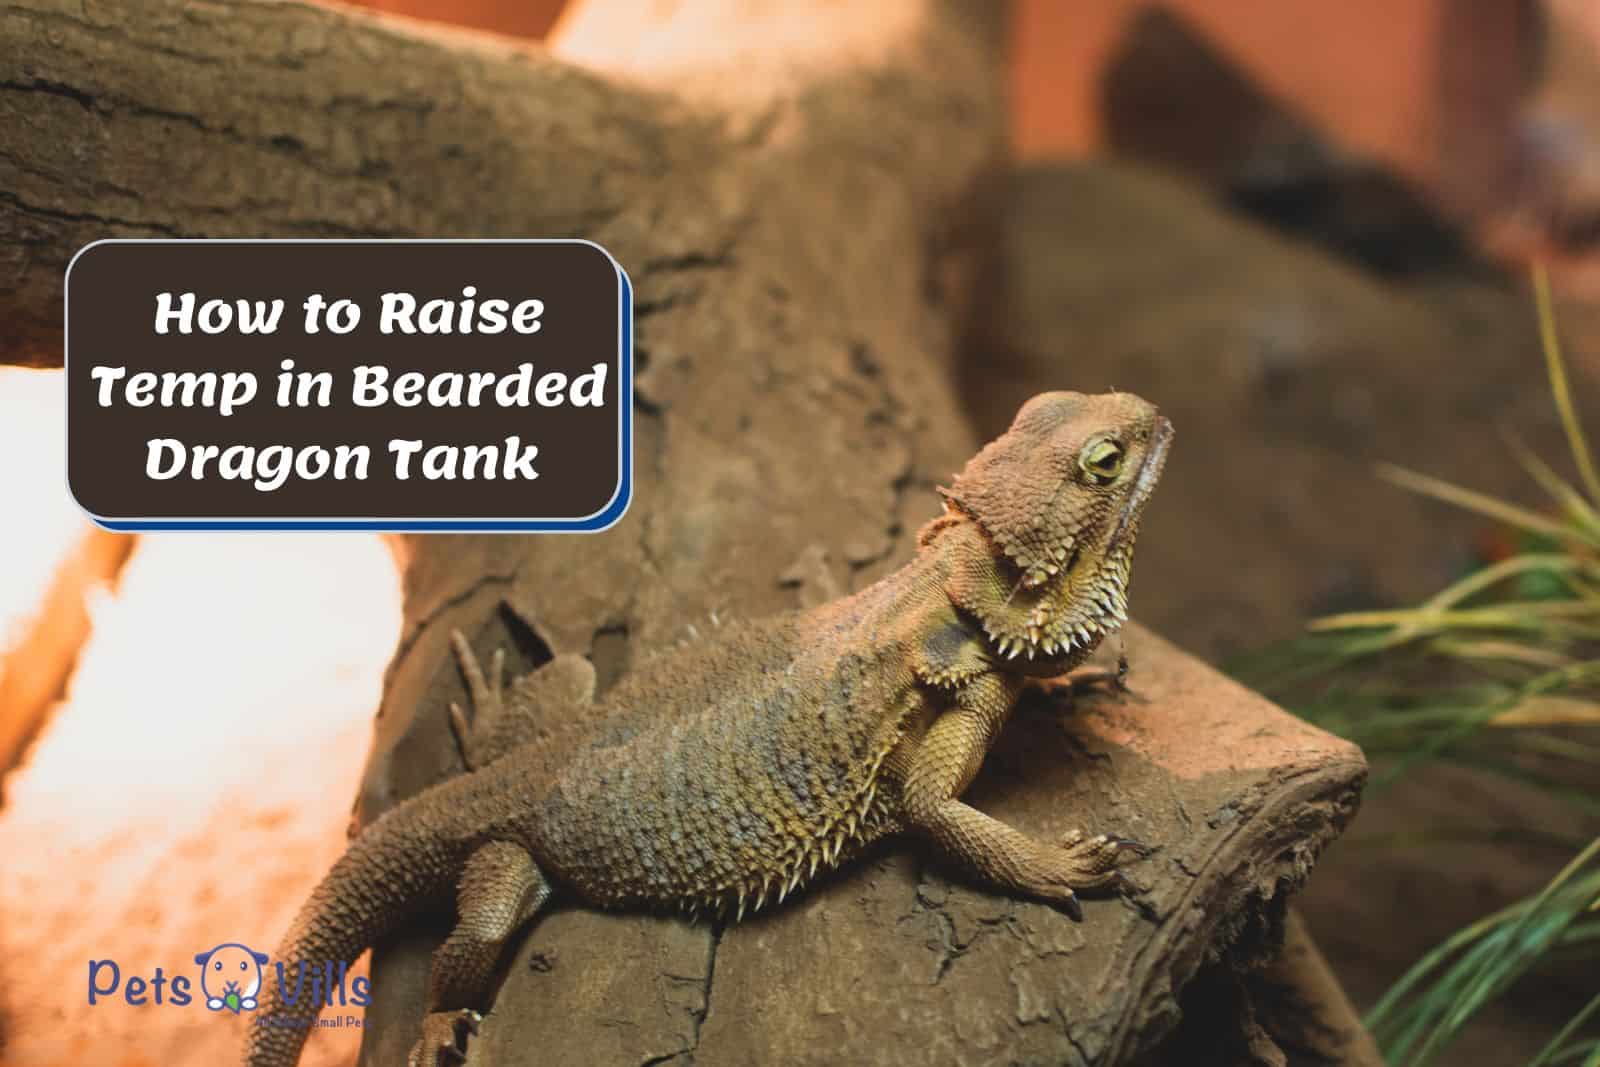 beardie inside a huge tank so How to Raise Temp in Bearded Dragon Tank?